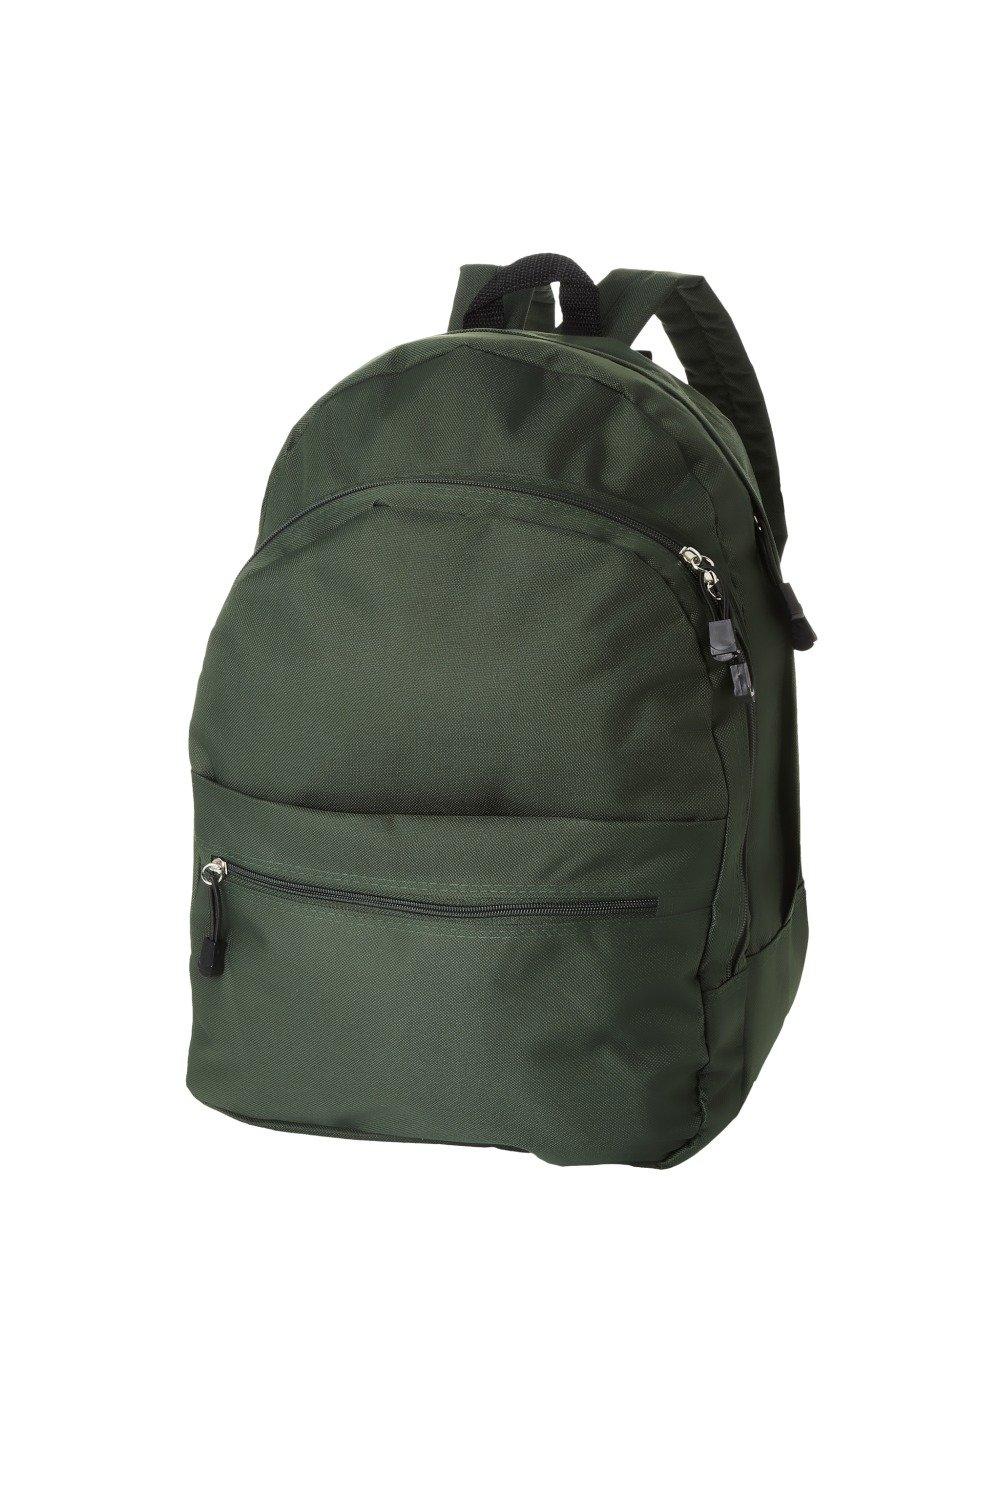 Трендовый рюкзак Bullet, зеленый универсальный сетчатый рюкзак унисекс с передним карманом оранжевый камуфляж